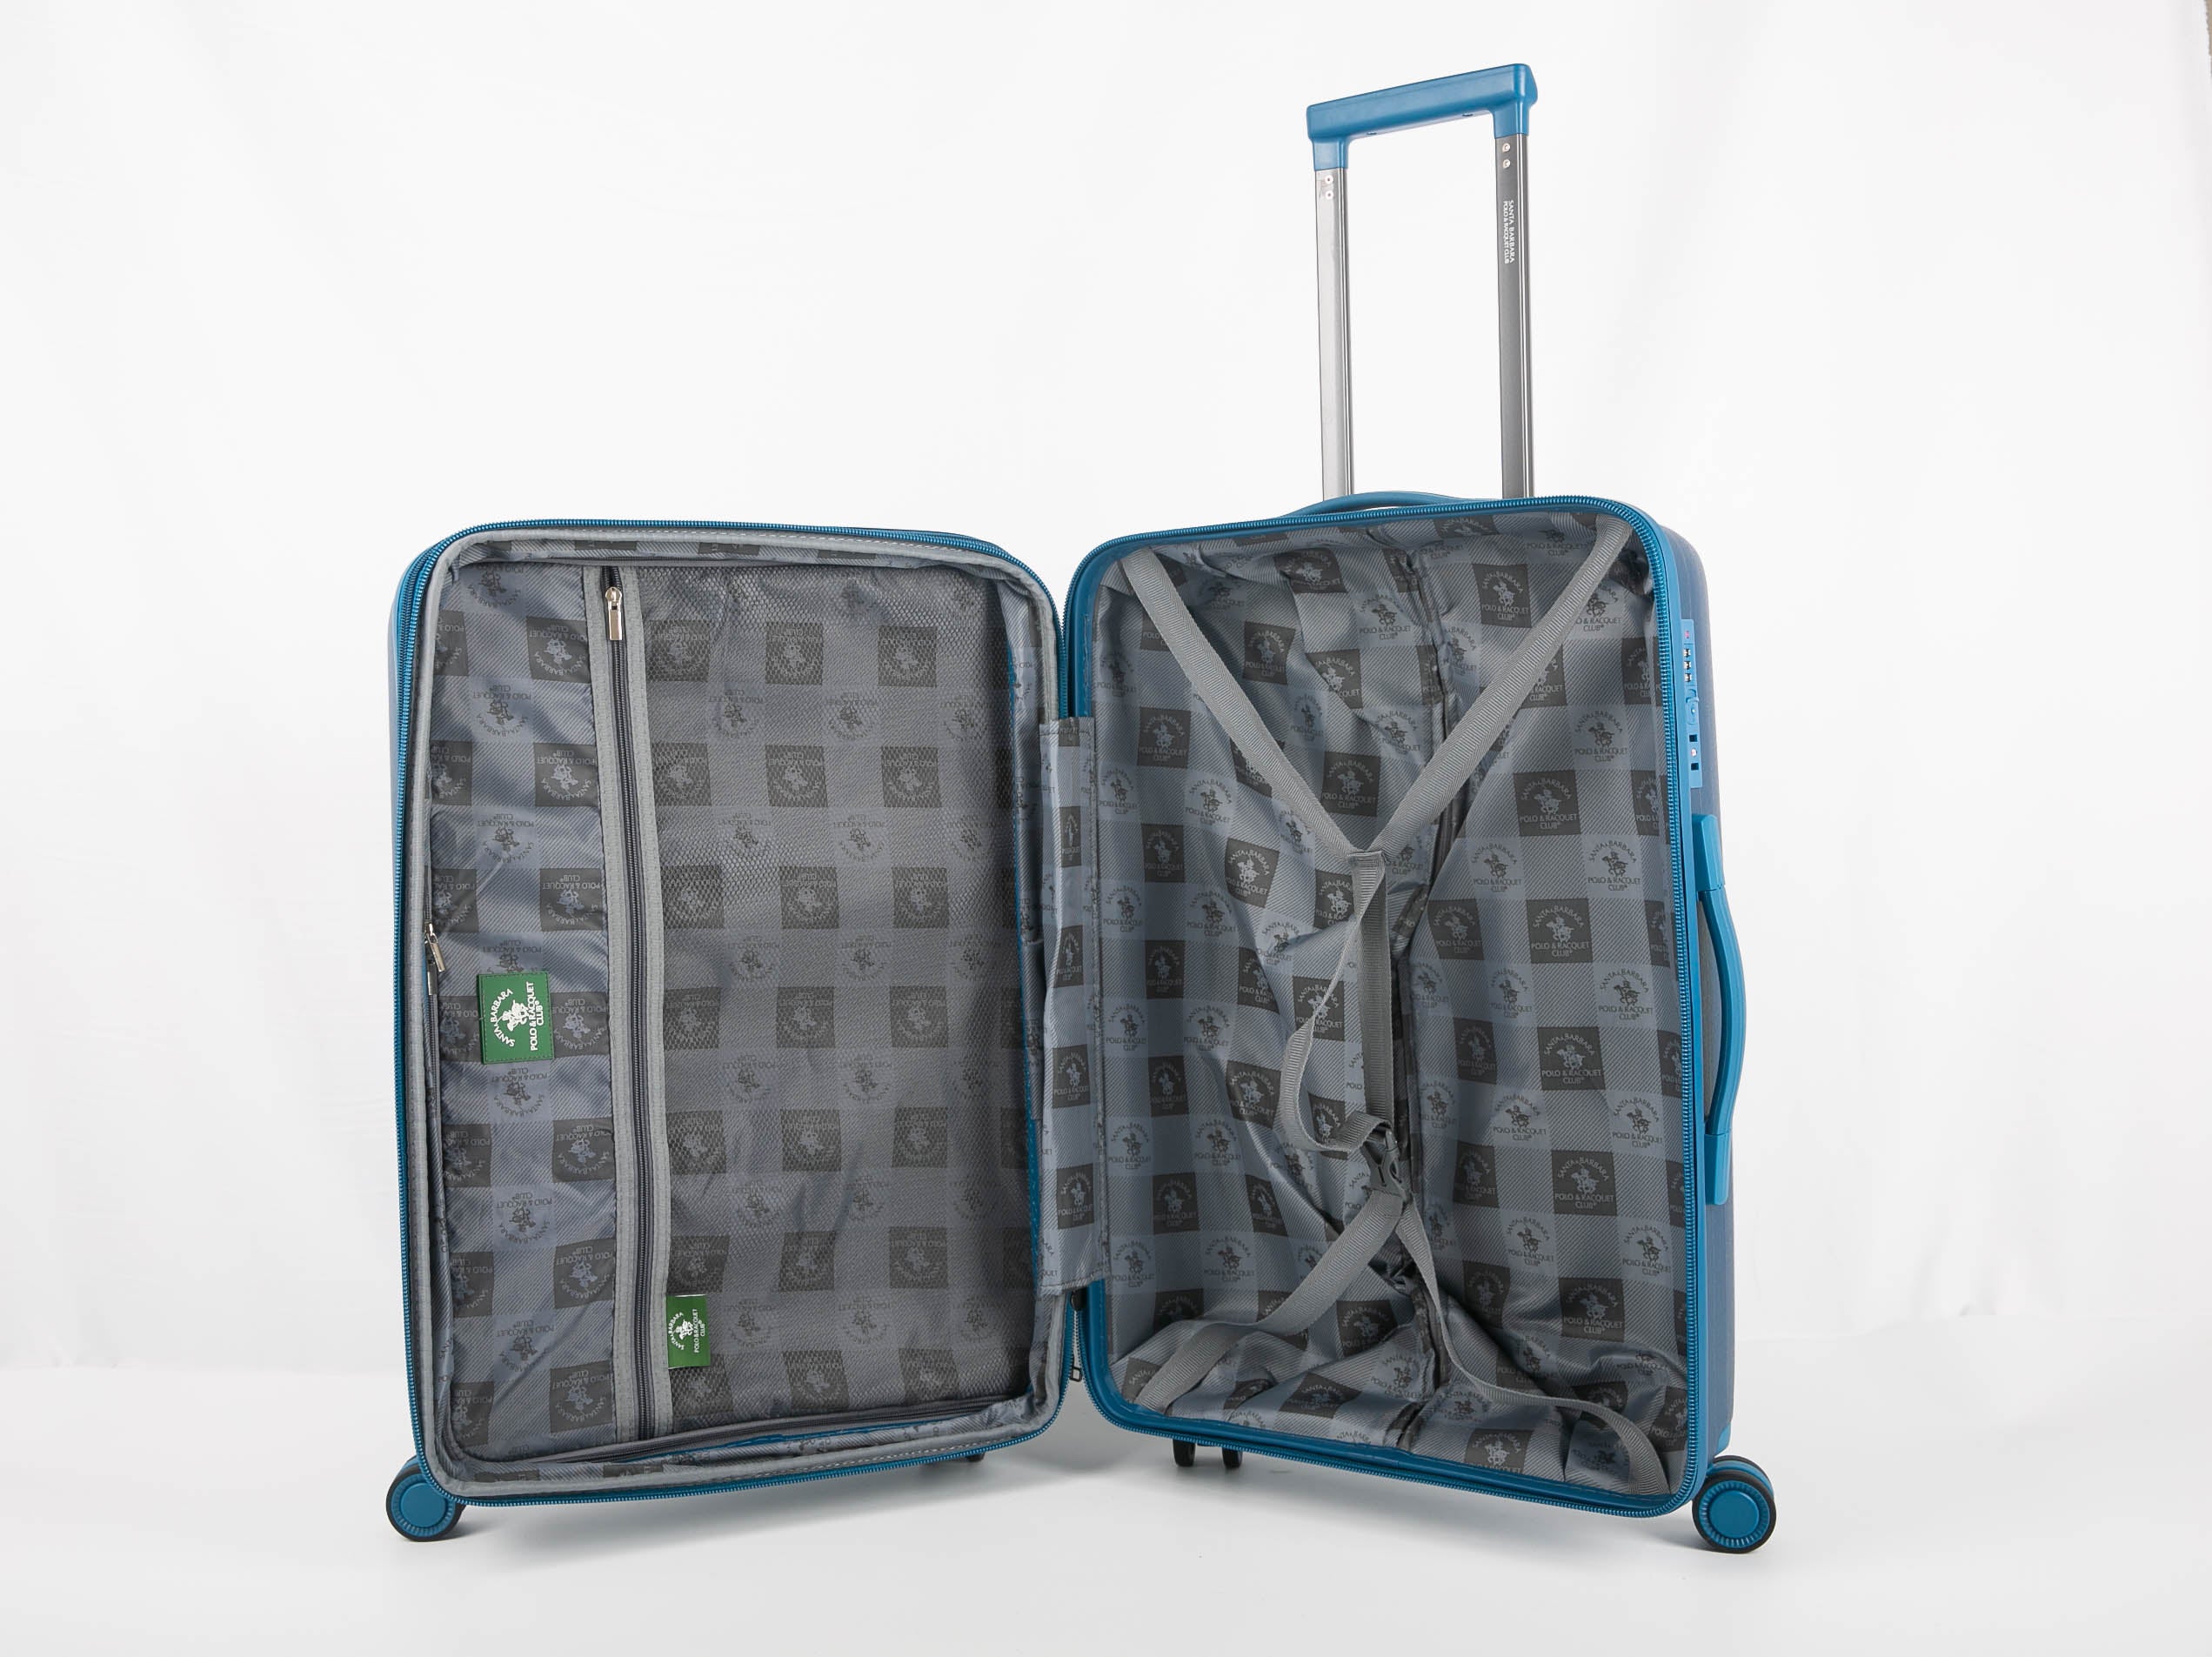 סט  3מזוודות, קשיחות דגם  Milan מבית המותג היוקרתי POLO CLUB